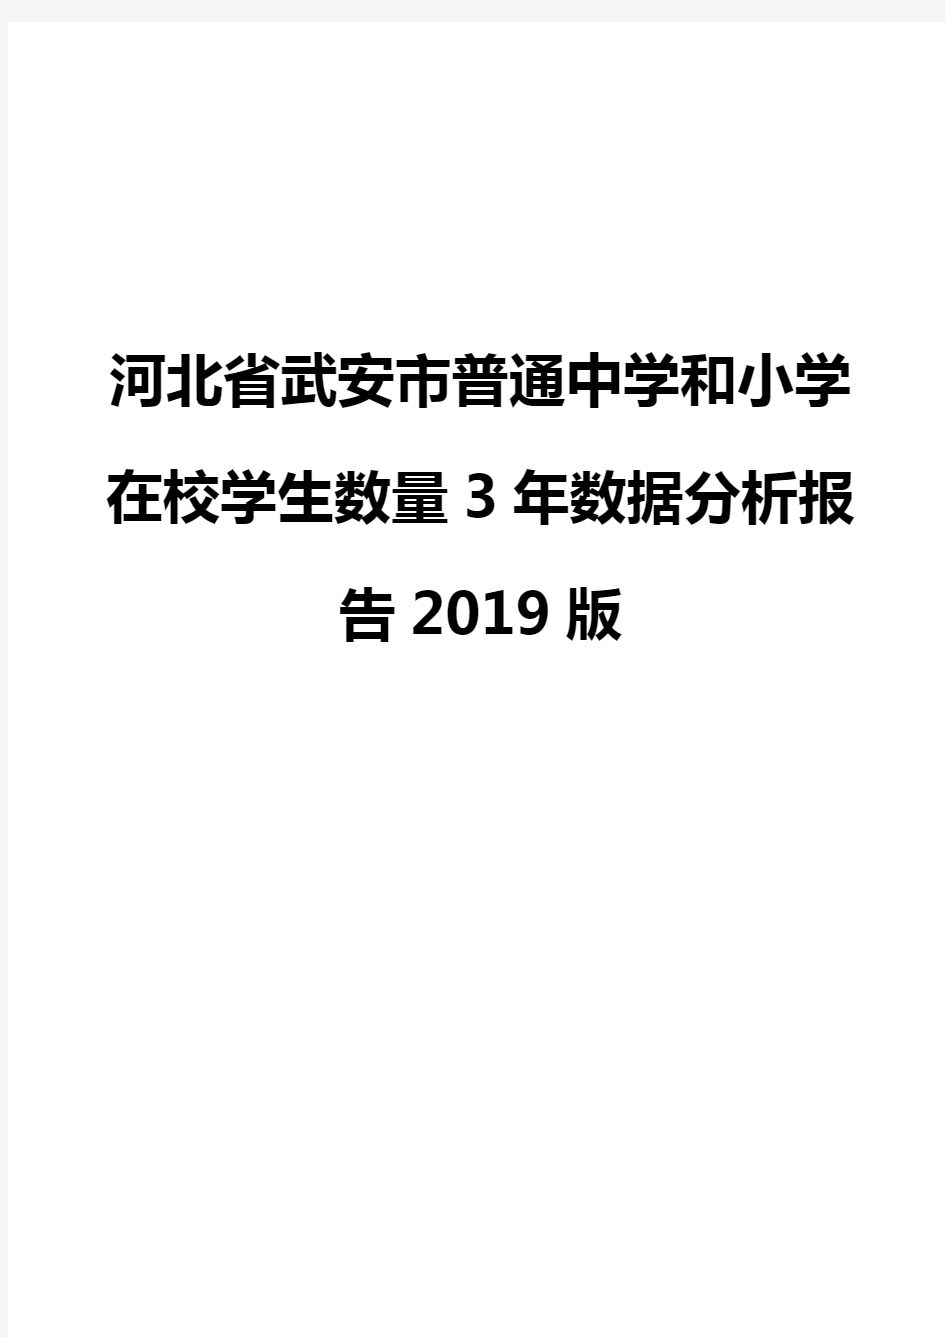 河北省武安市普通中学和小学在校学生数量3年数据分析报告2019版